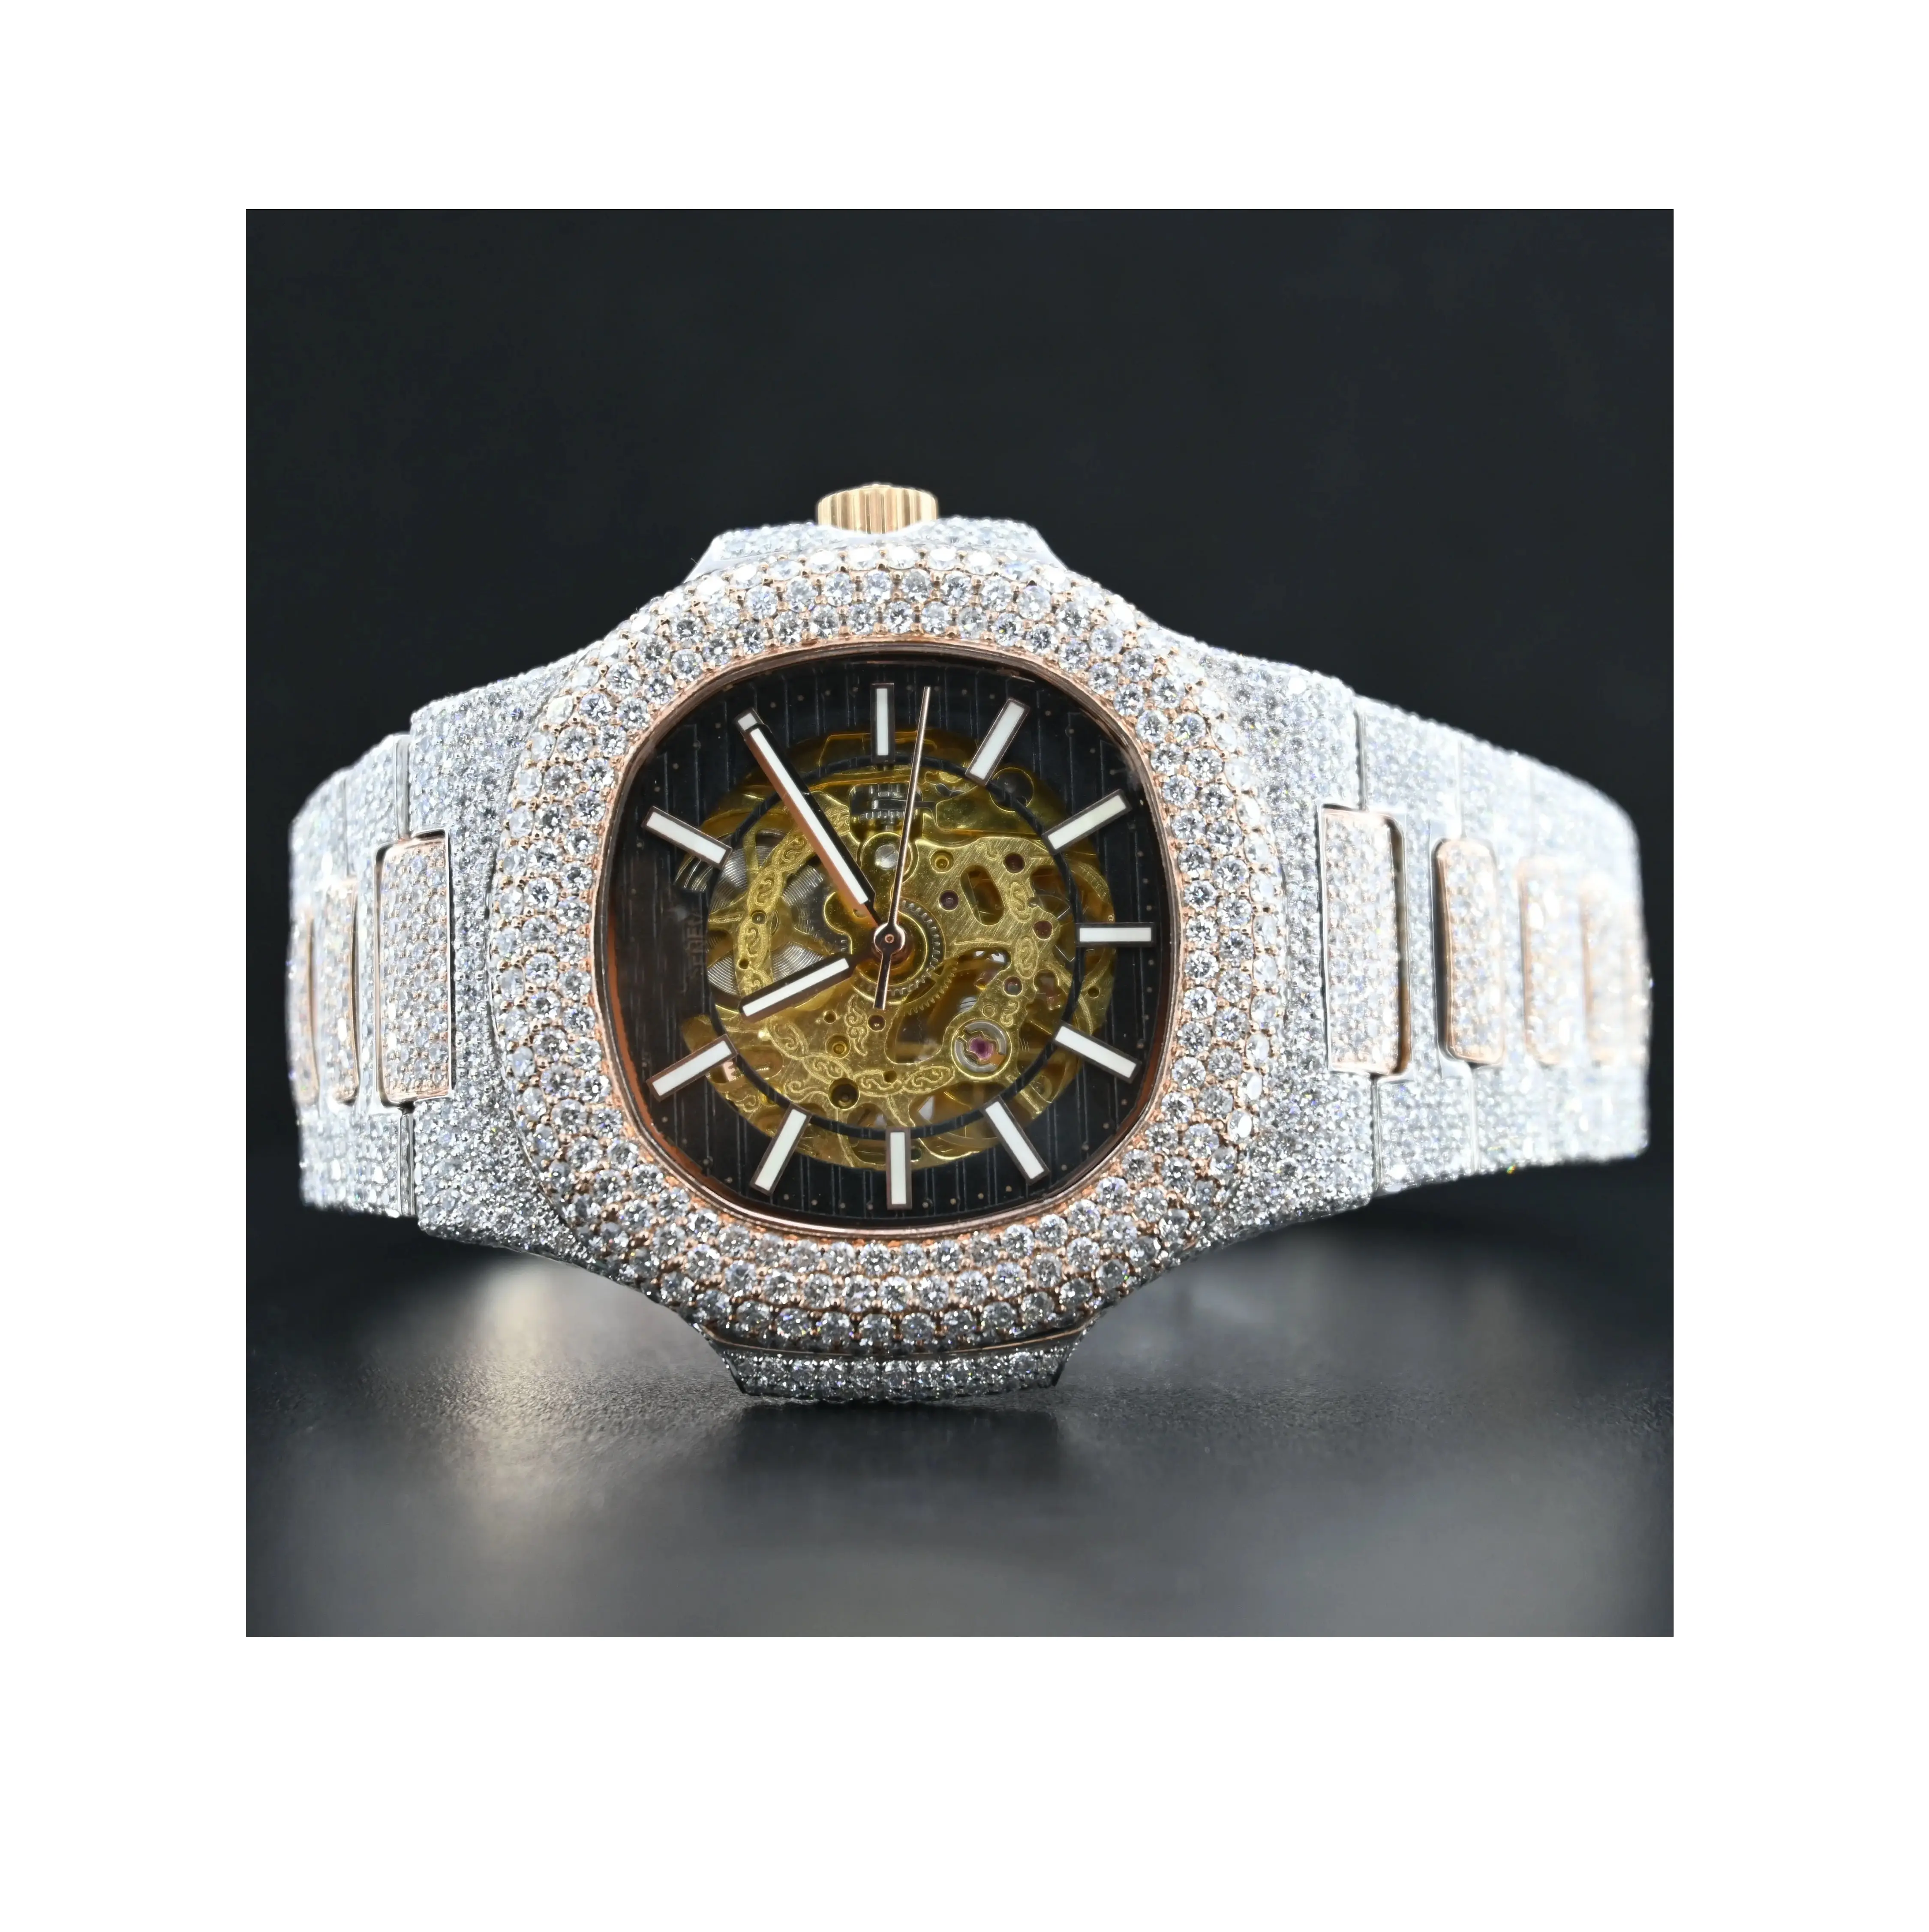 Reloj Ice-out Diamond de diseño atractivo con reloj VVS Clarity para hombre para ocasiones casuales disponible a un precio asequible